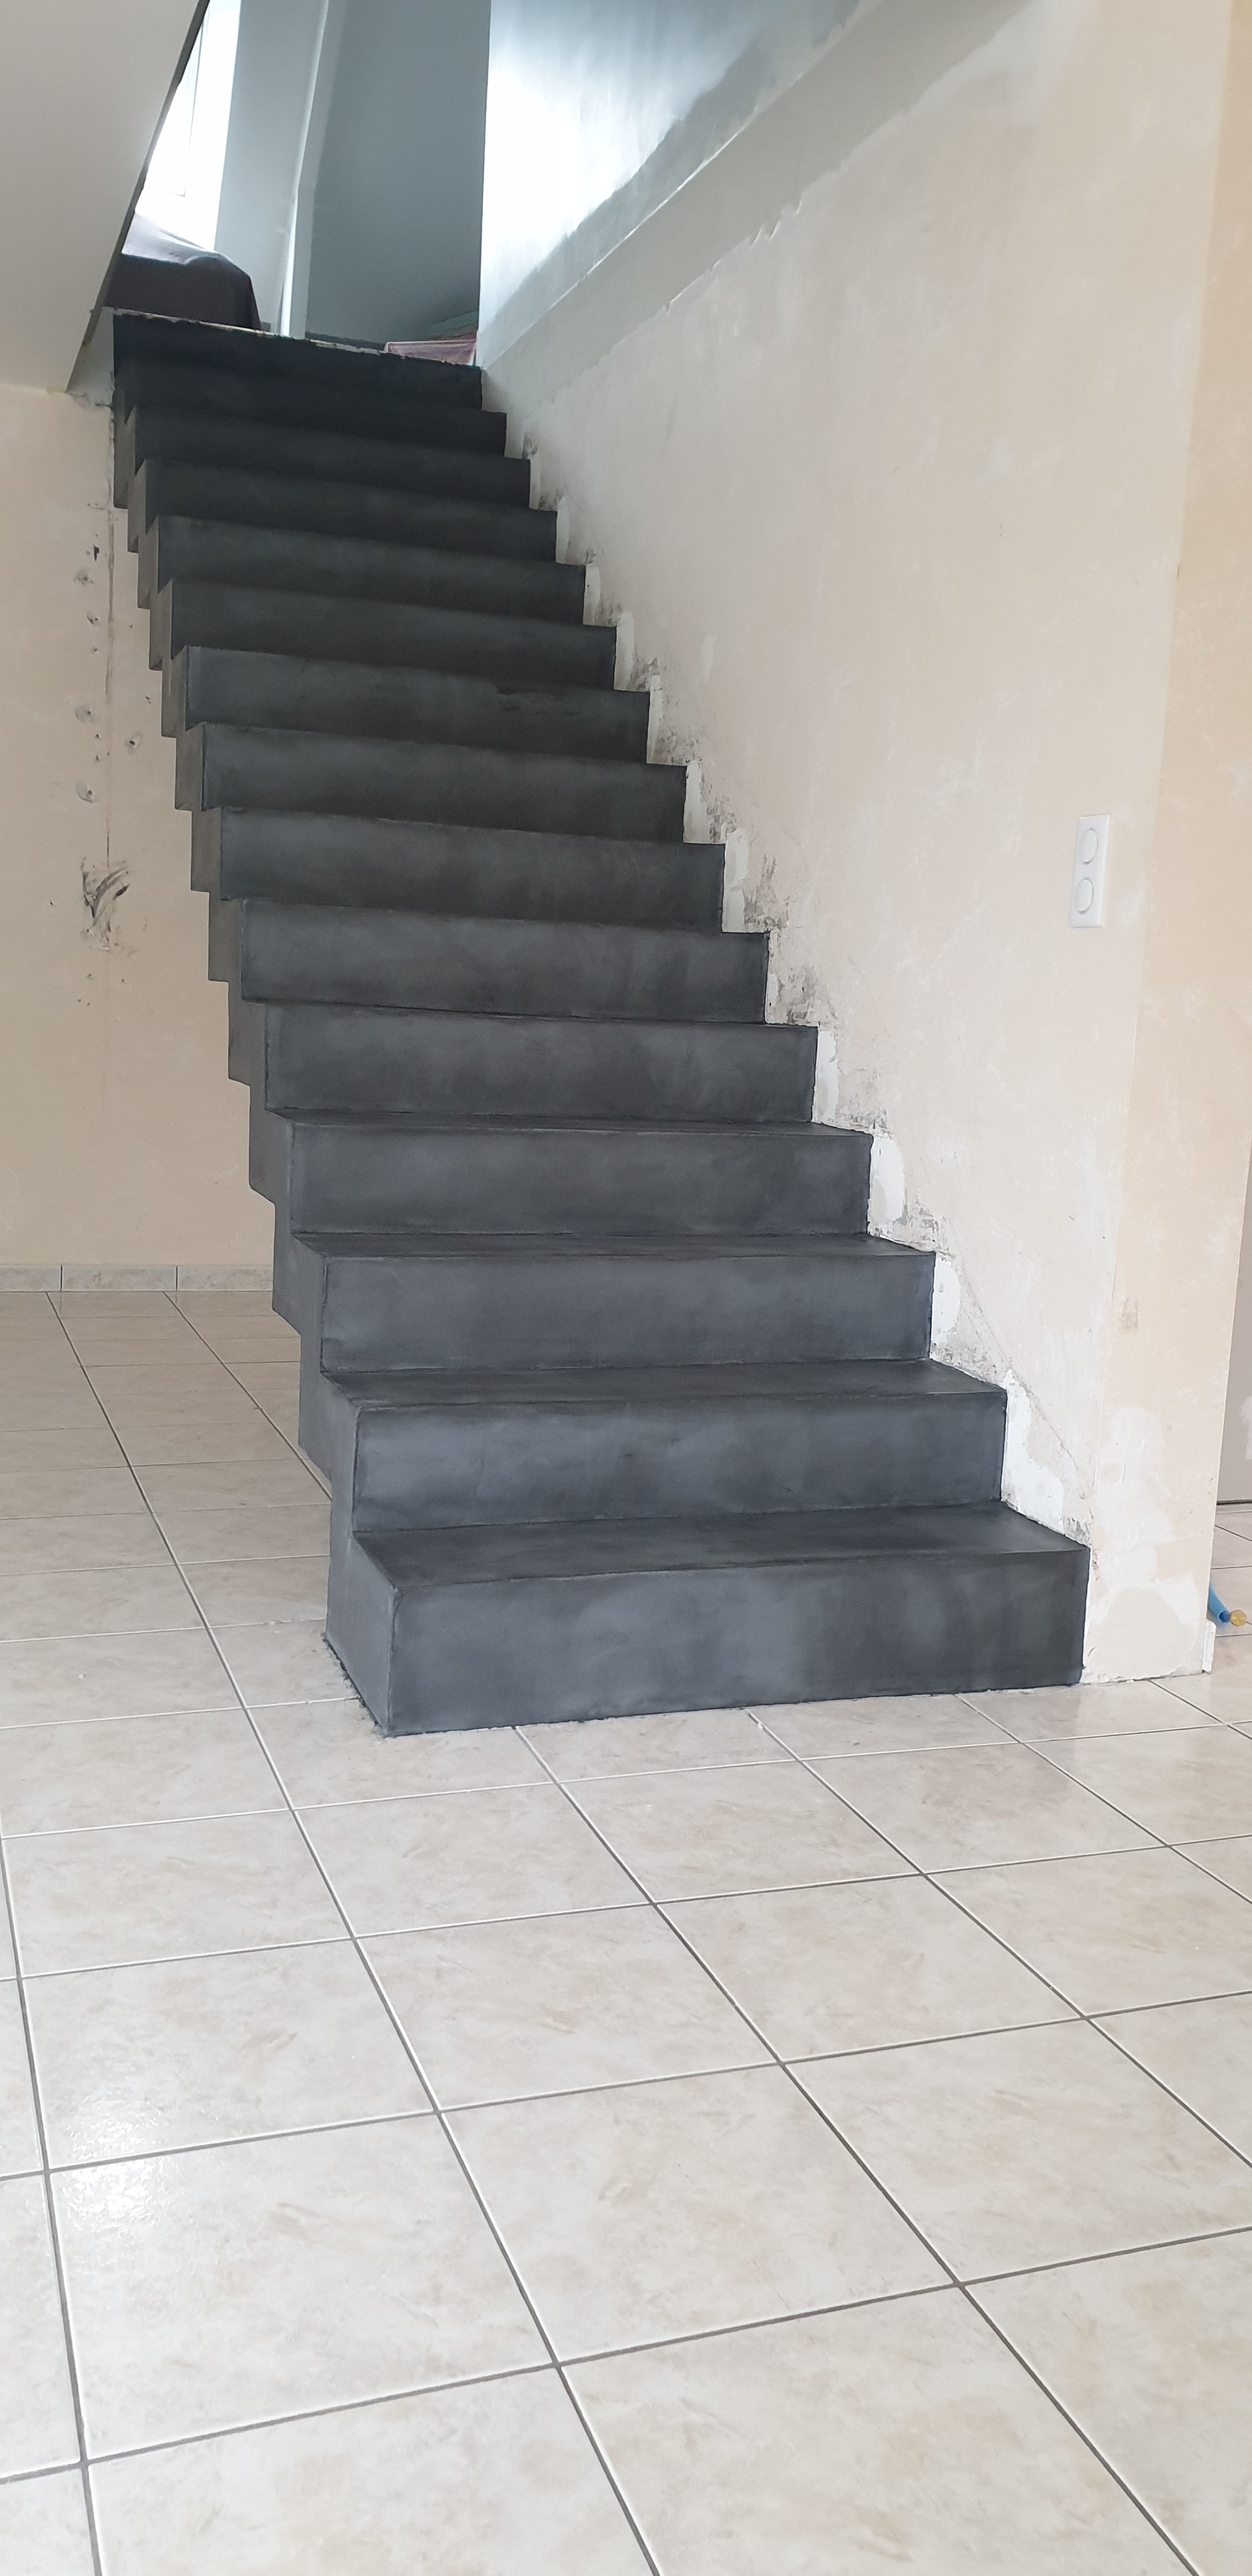 remarquable escalier crémaillère droit en béton ciré vernis mat couleur gris aberdeen à nort sur erdre dans le département de la Loire Atlantique pour un particulier